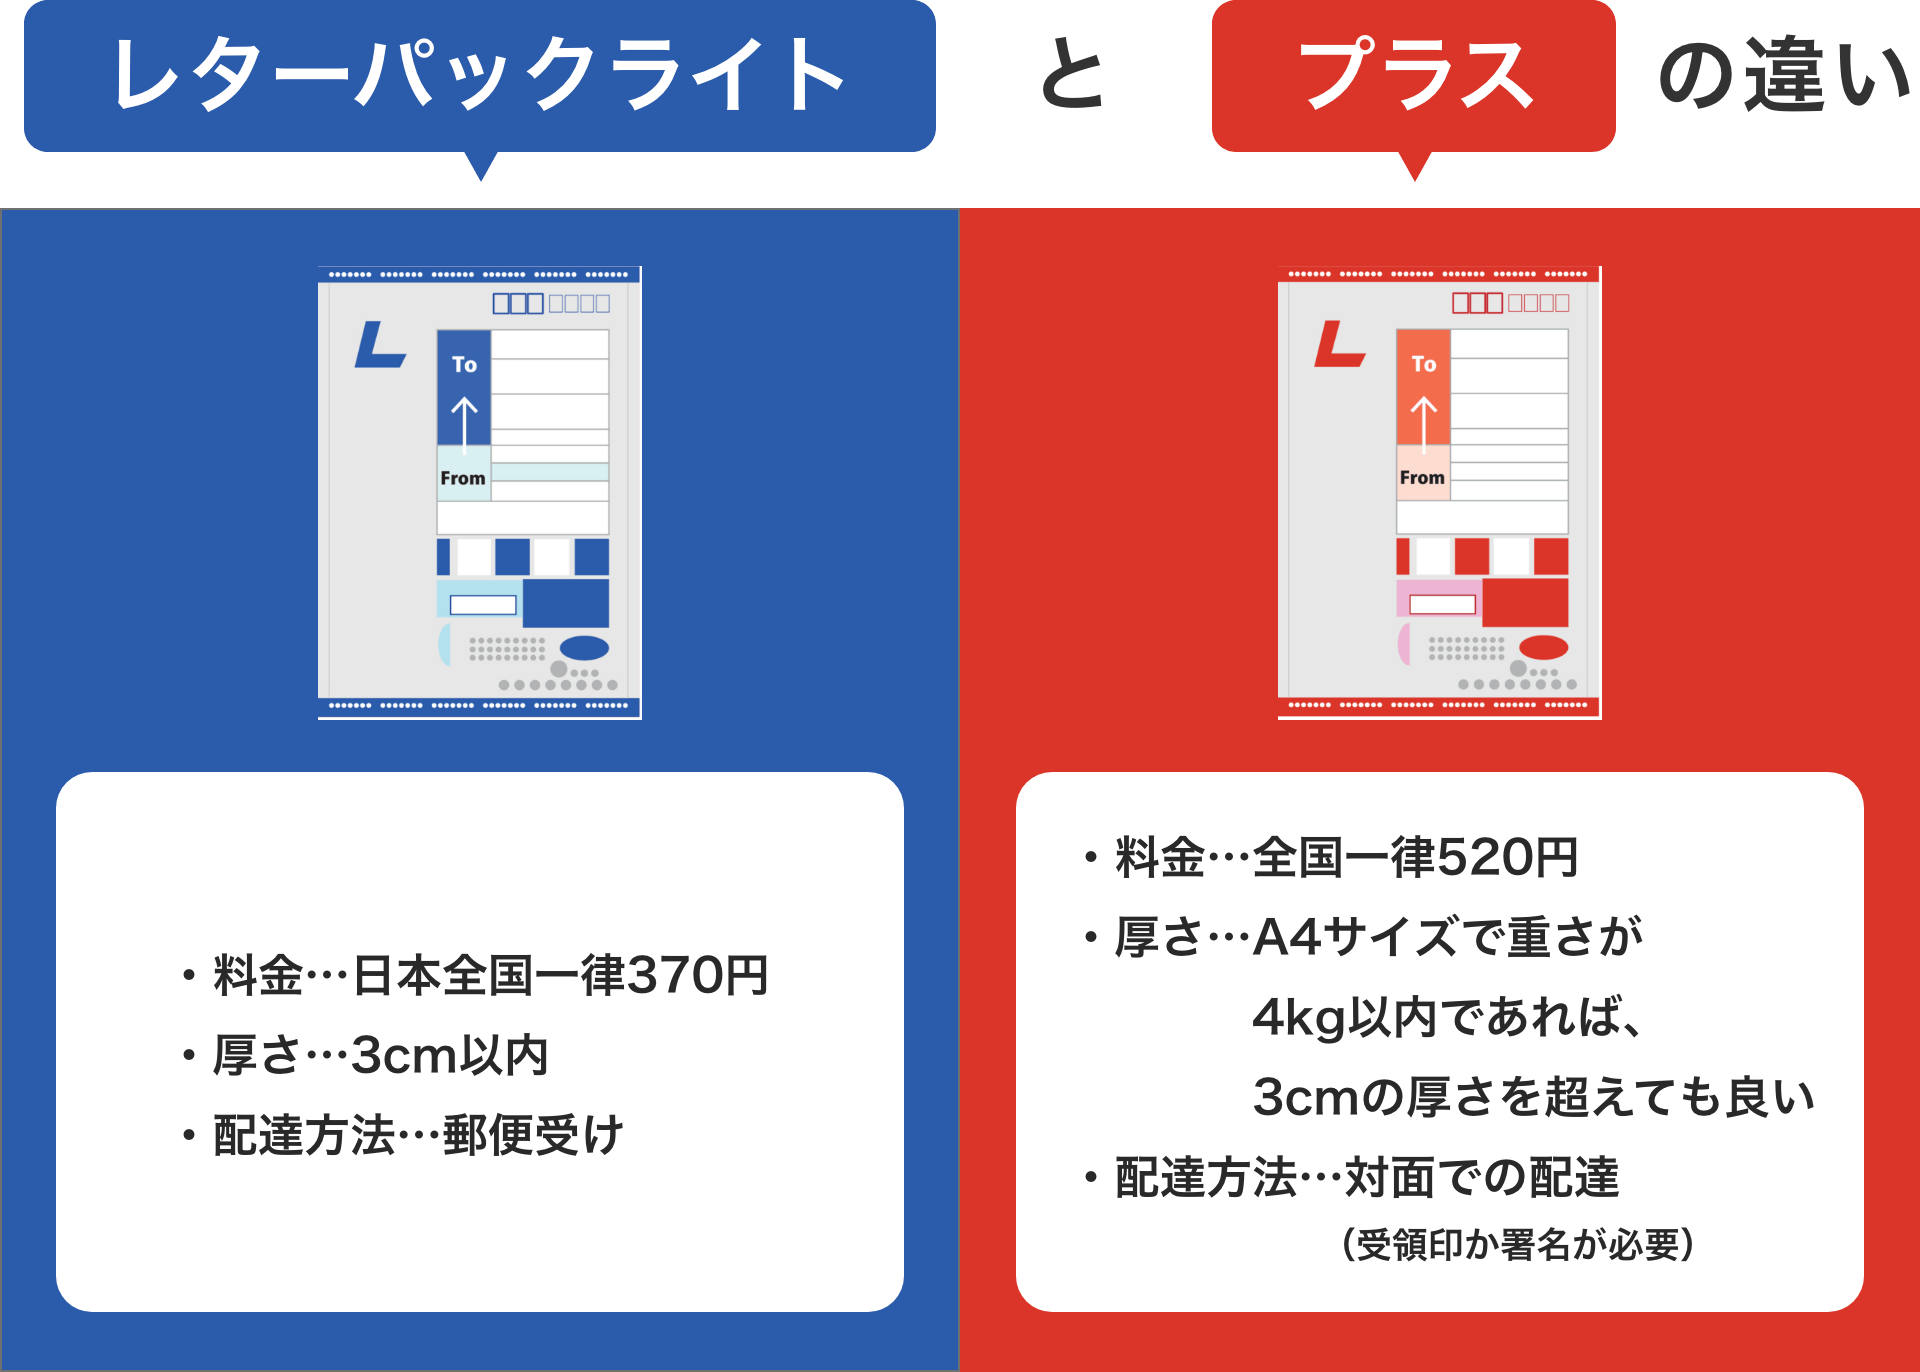 レターパックライト レターパック レターパックライト 郵便 切手 配達 日本郵便